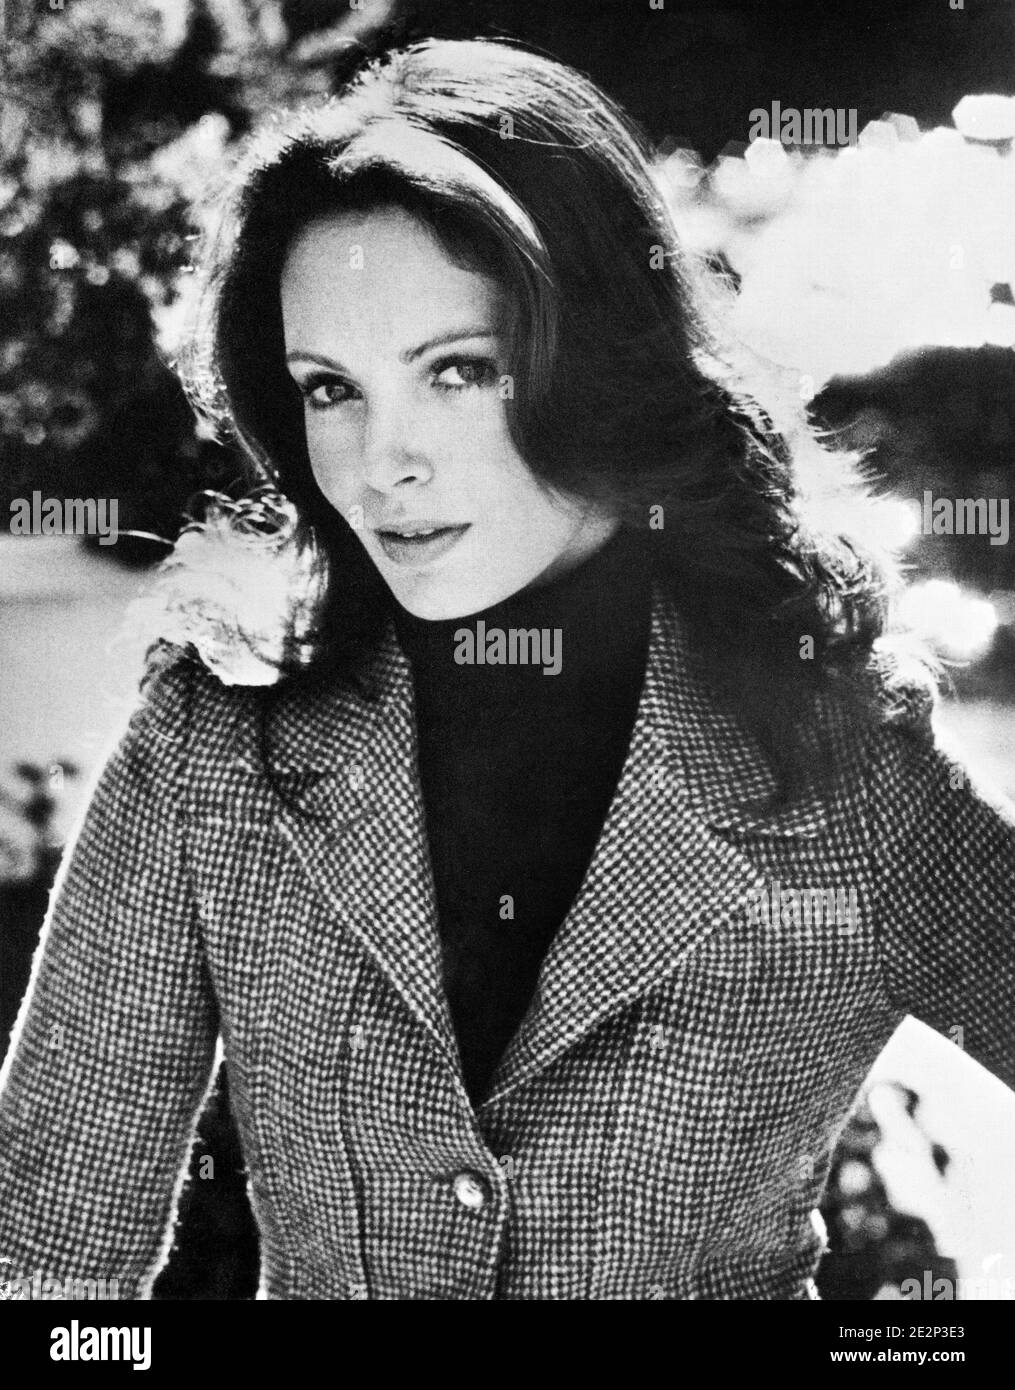 Actrice Jaclyn Smith, demi-longueur du portrait publicitaire pour la série TV action-Drama, 'Charlie's Angels', Sony Pictures Television, 1976 Banque D'Images